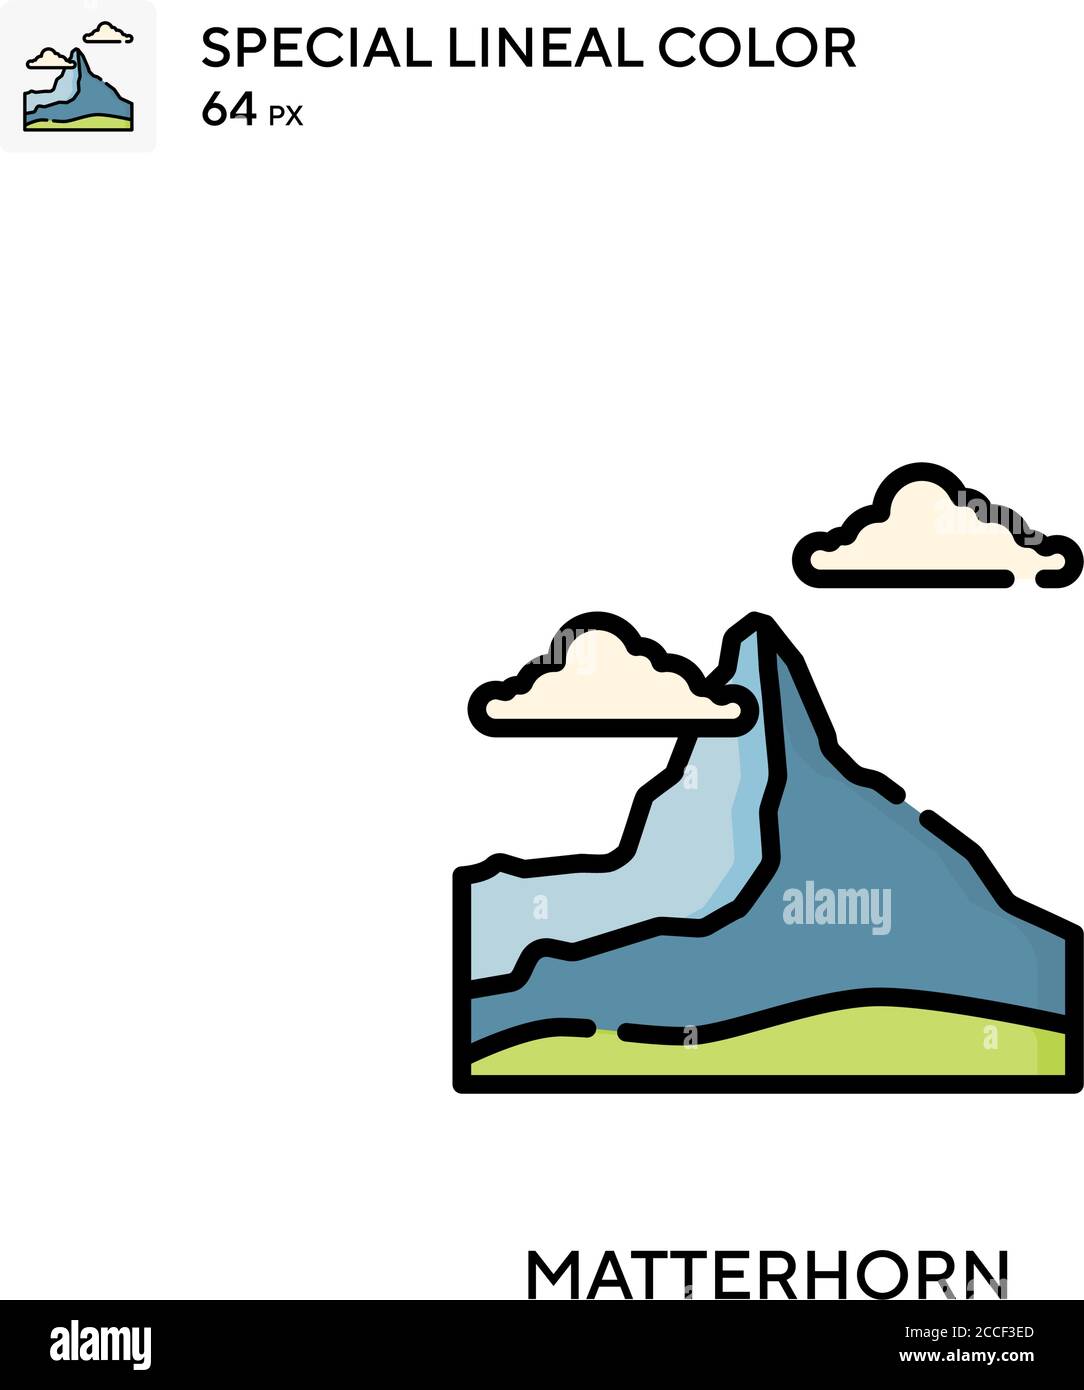 Matterhorn icona a colori speciali. Modello di disegno simbolo illustrazione per elemento dell'interfaccia utente Web mobile. Illustrazione Vettoriale